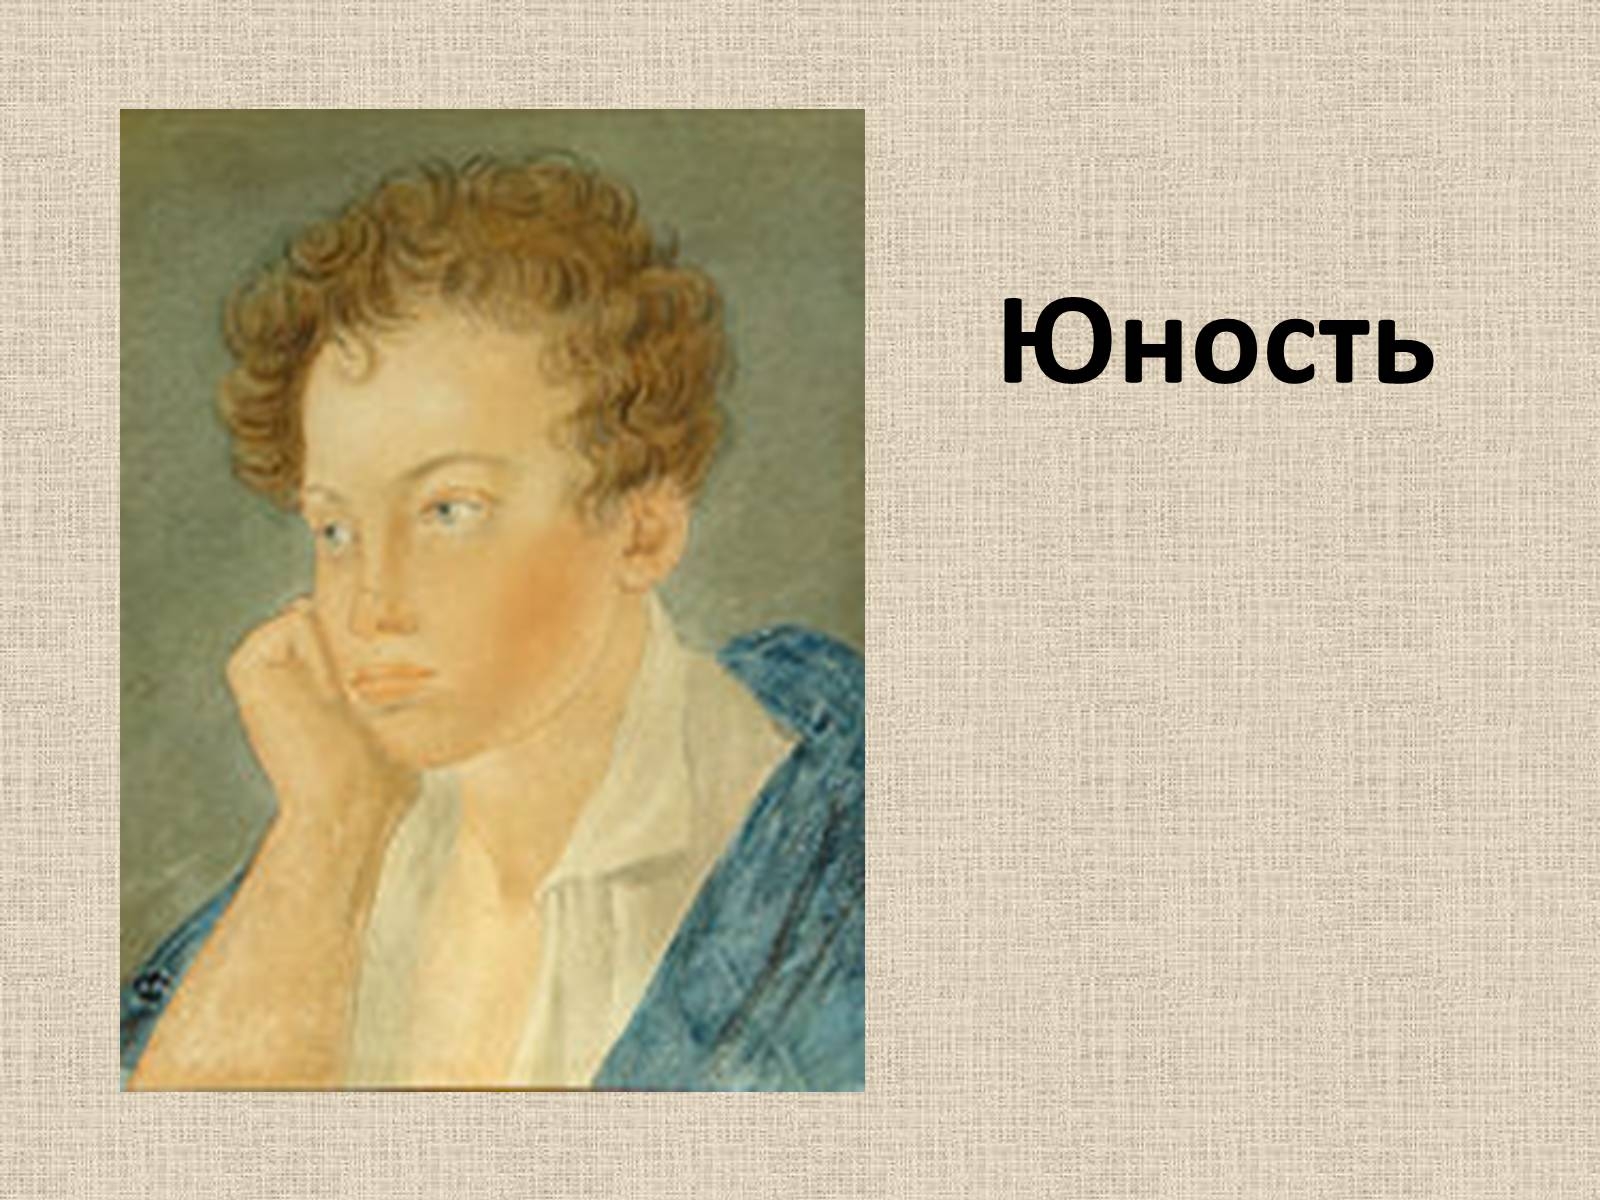 Пушкин в юности